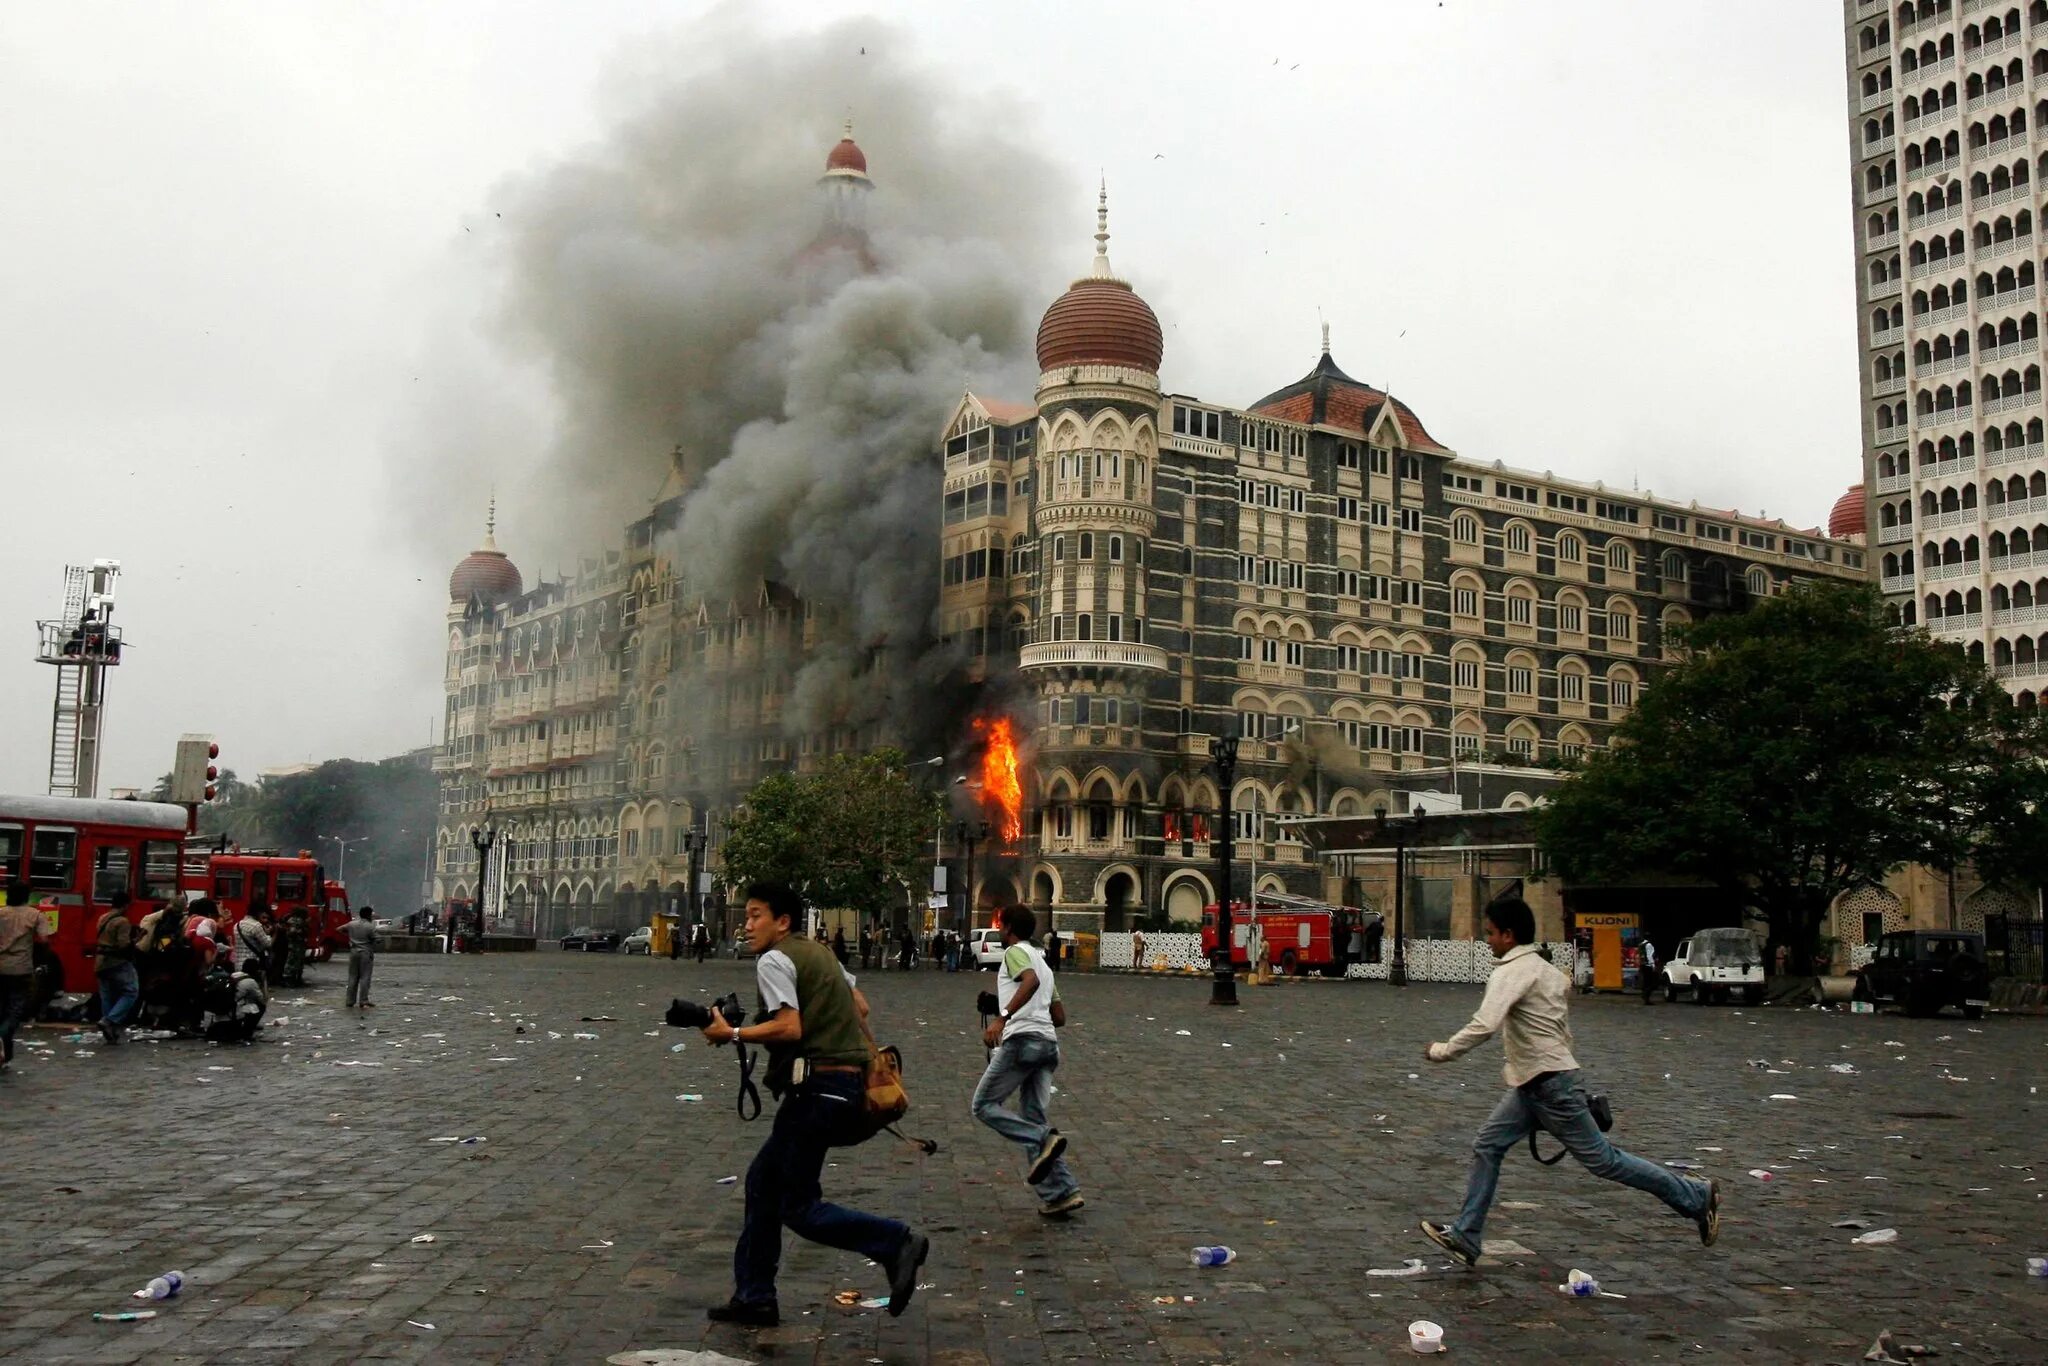 Теракты в северной корее. Мумбаи 2008 Тадж Махал теракт. Теракт в Индии 2008 Тадж Махал. 26 Ноября 2008 отель Мумбаи.